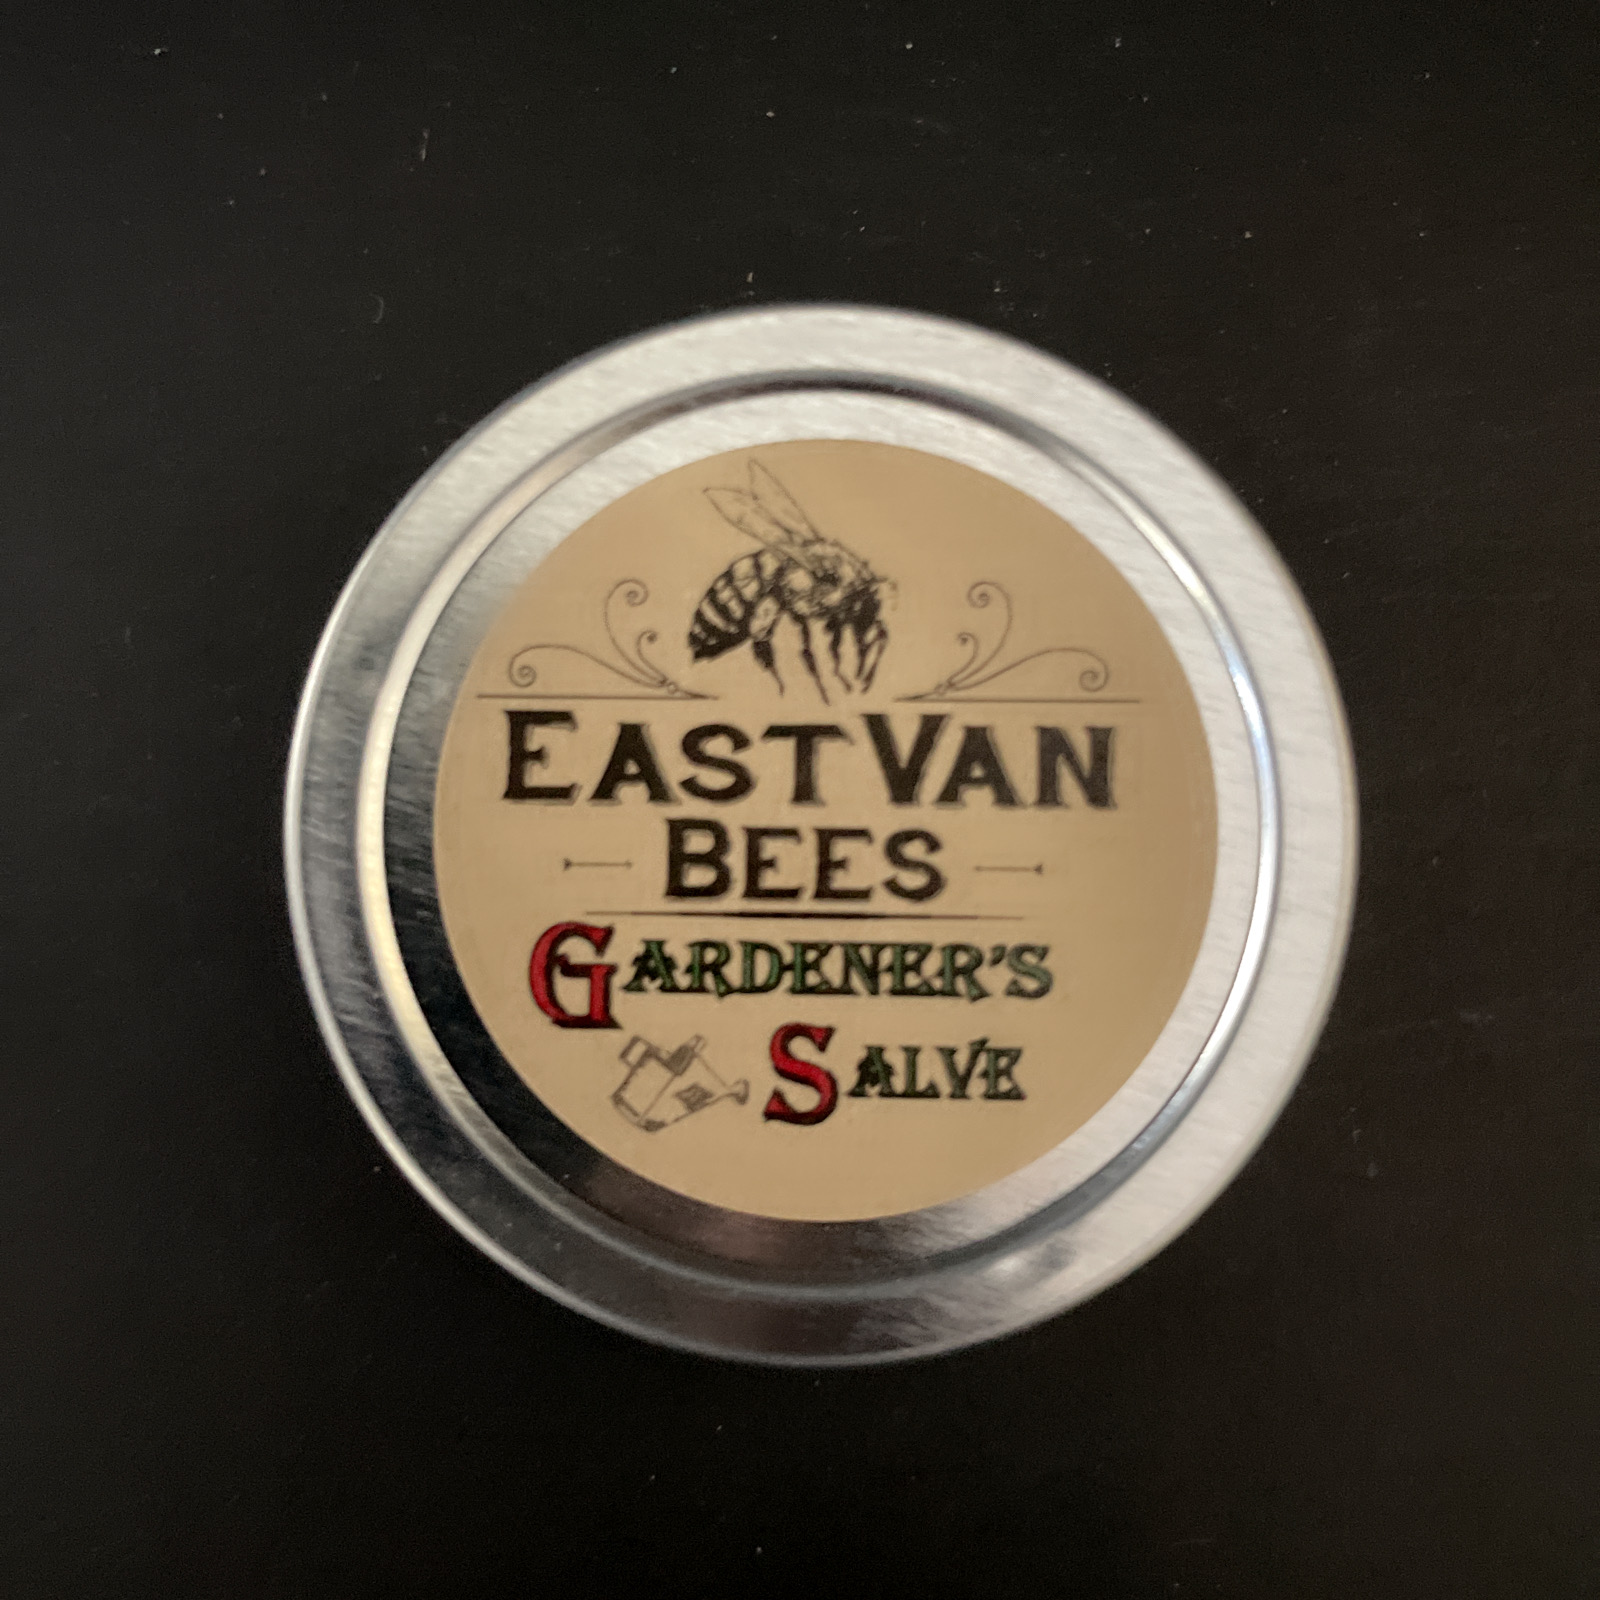 East Van Bees: Gardeners Salve